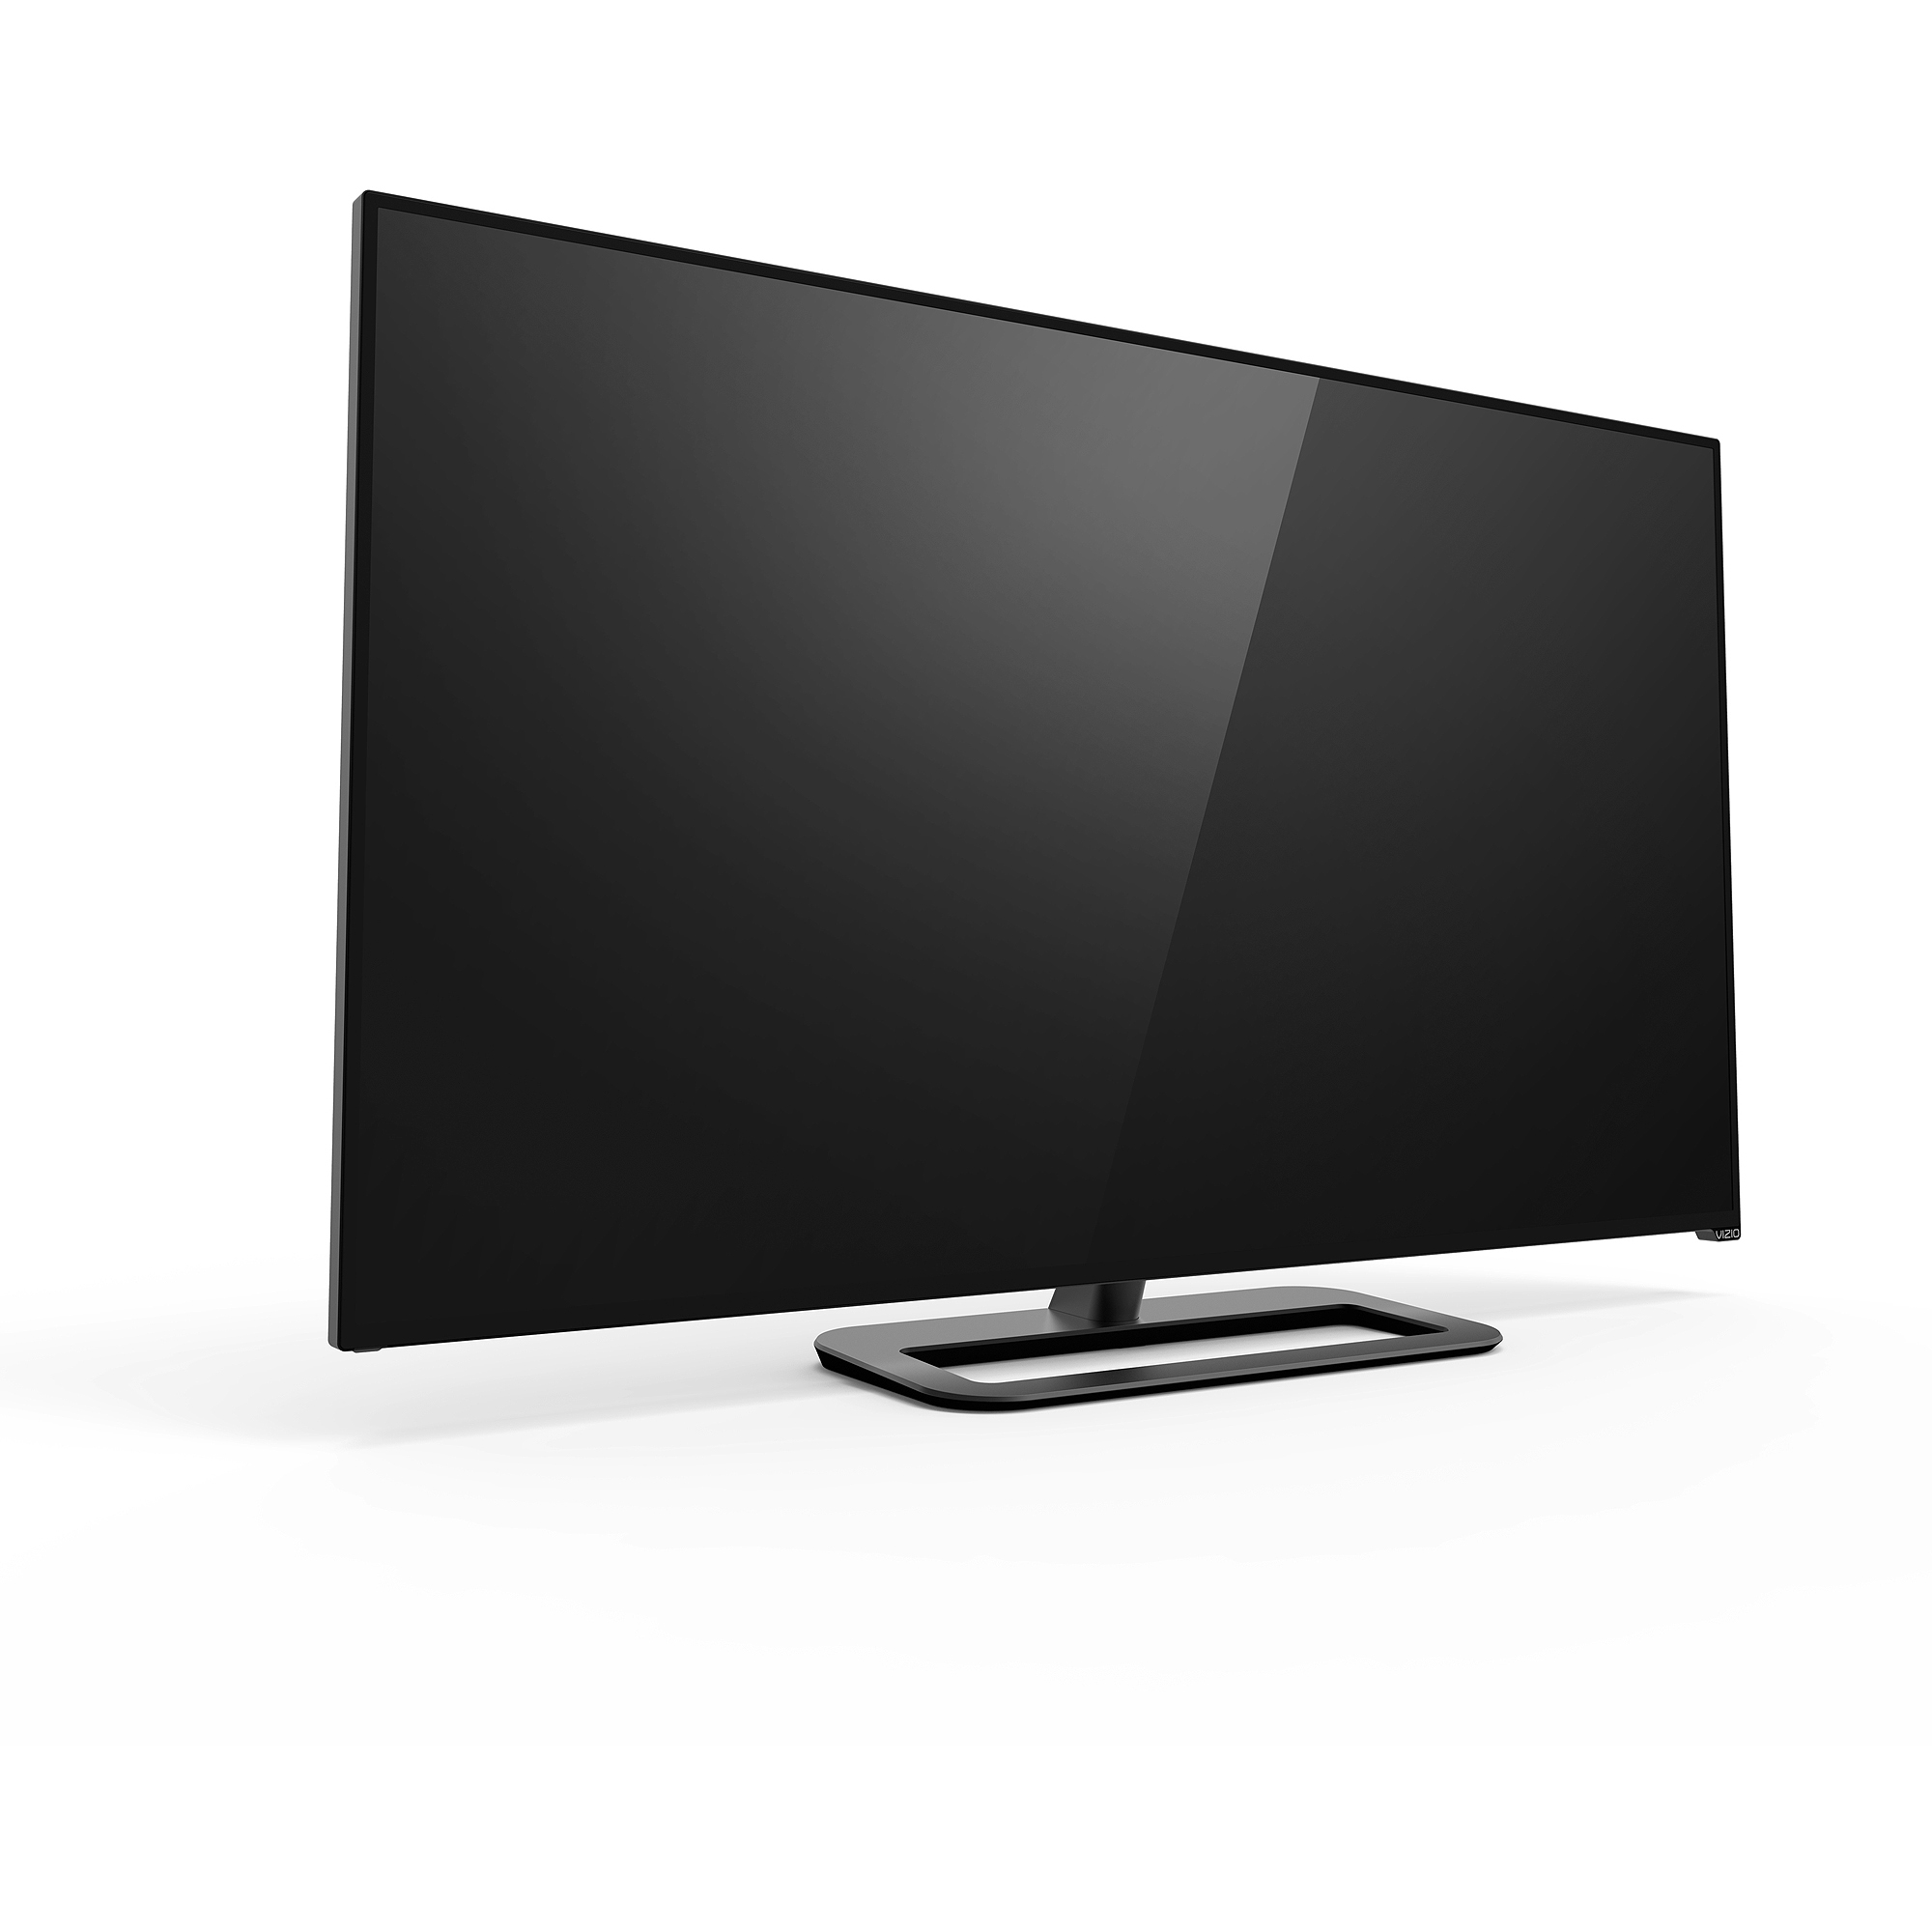 VIZIO 50" Class 4K UHDTV (2160p) Smart LED-LCD TV (P502ui-B1E) - image 2 of 9